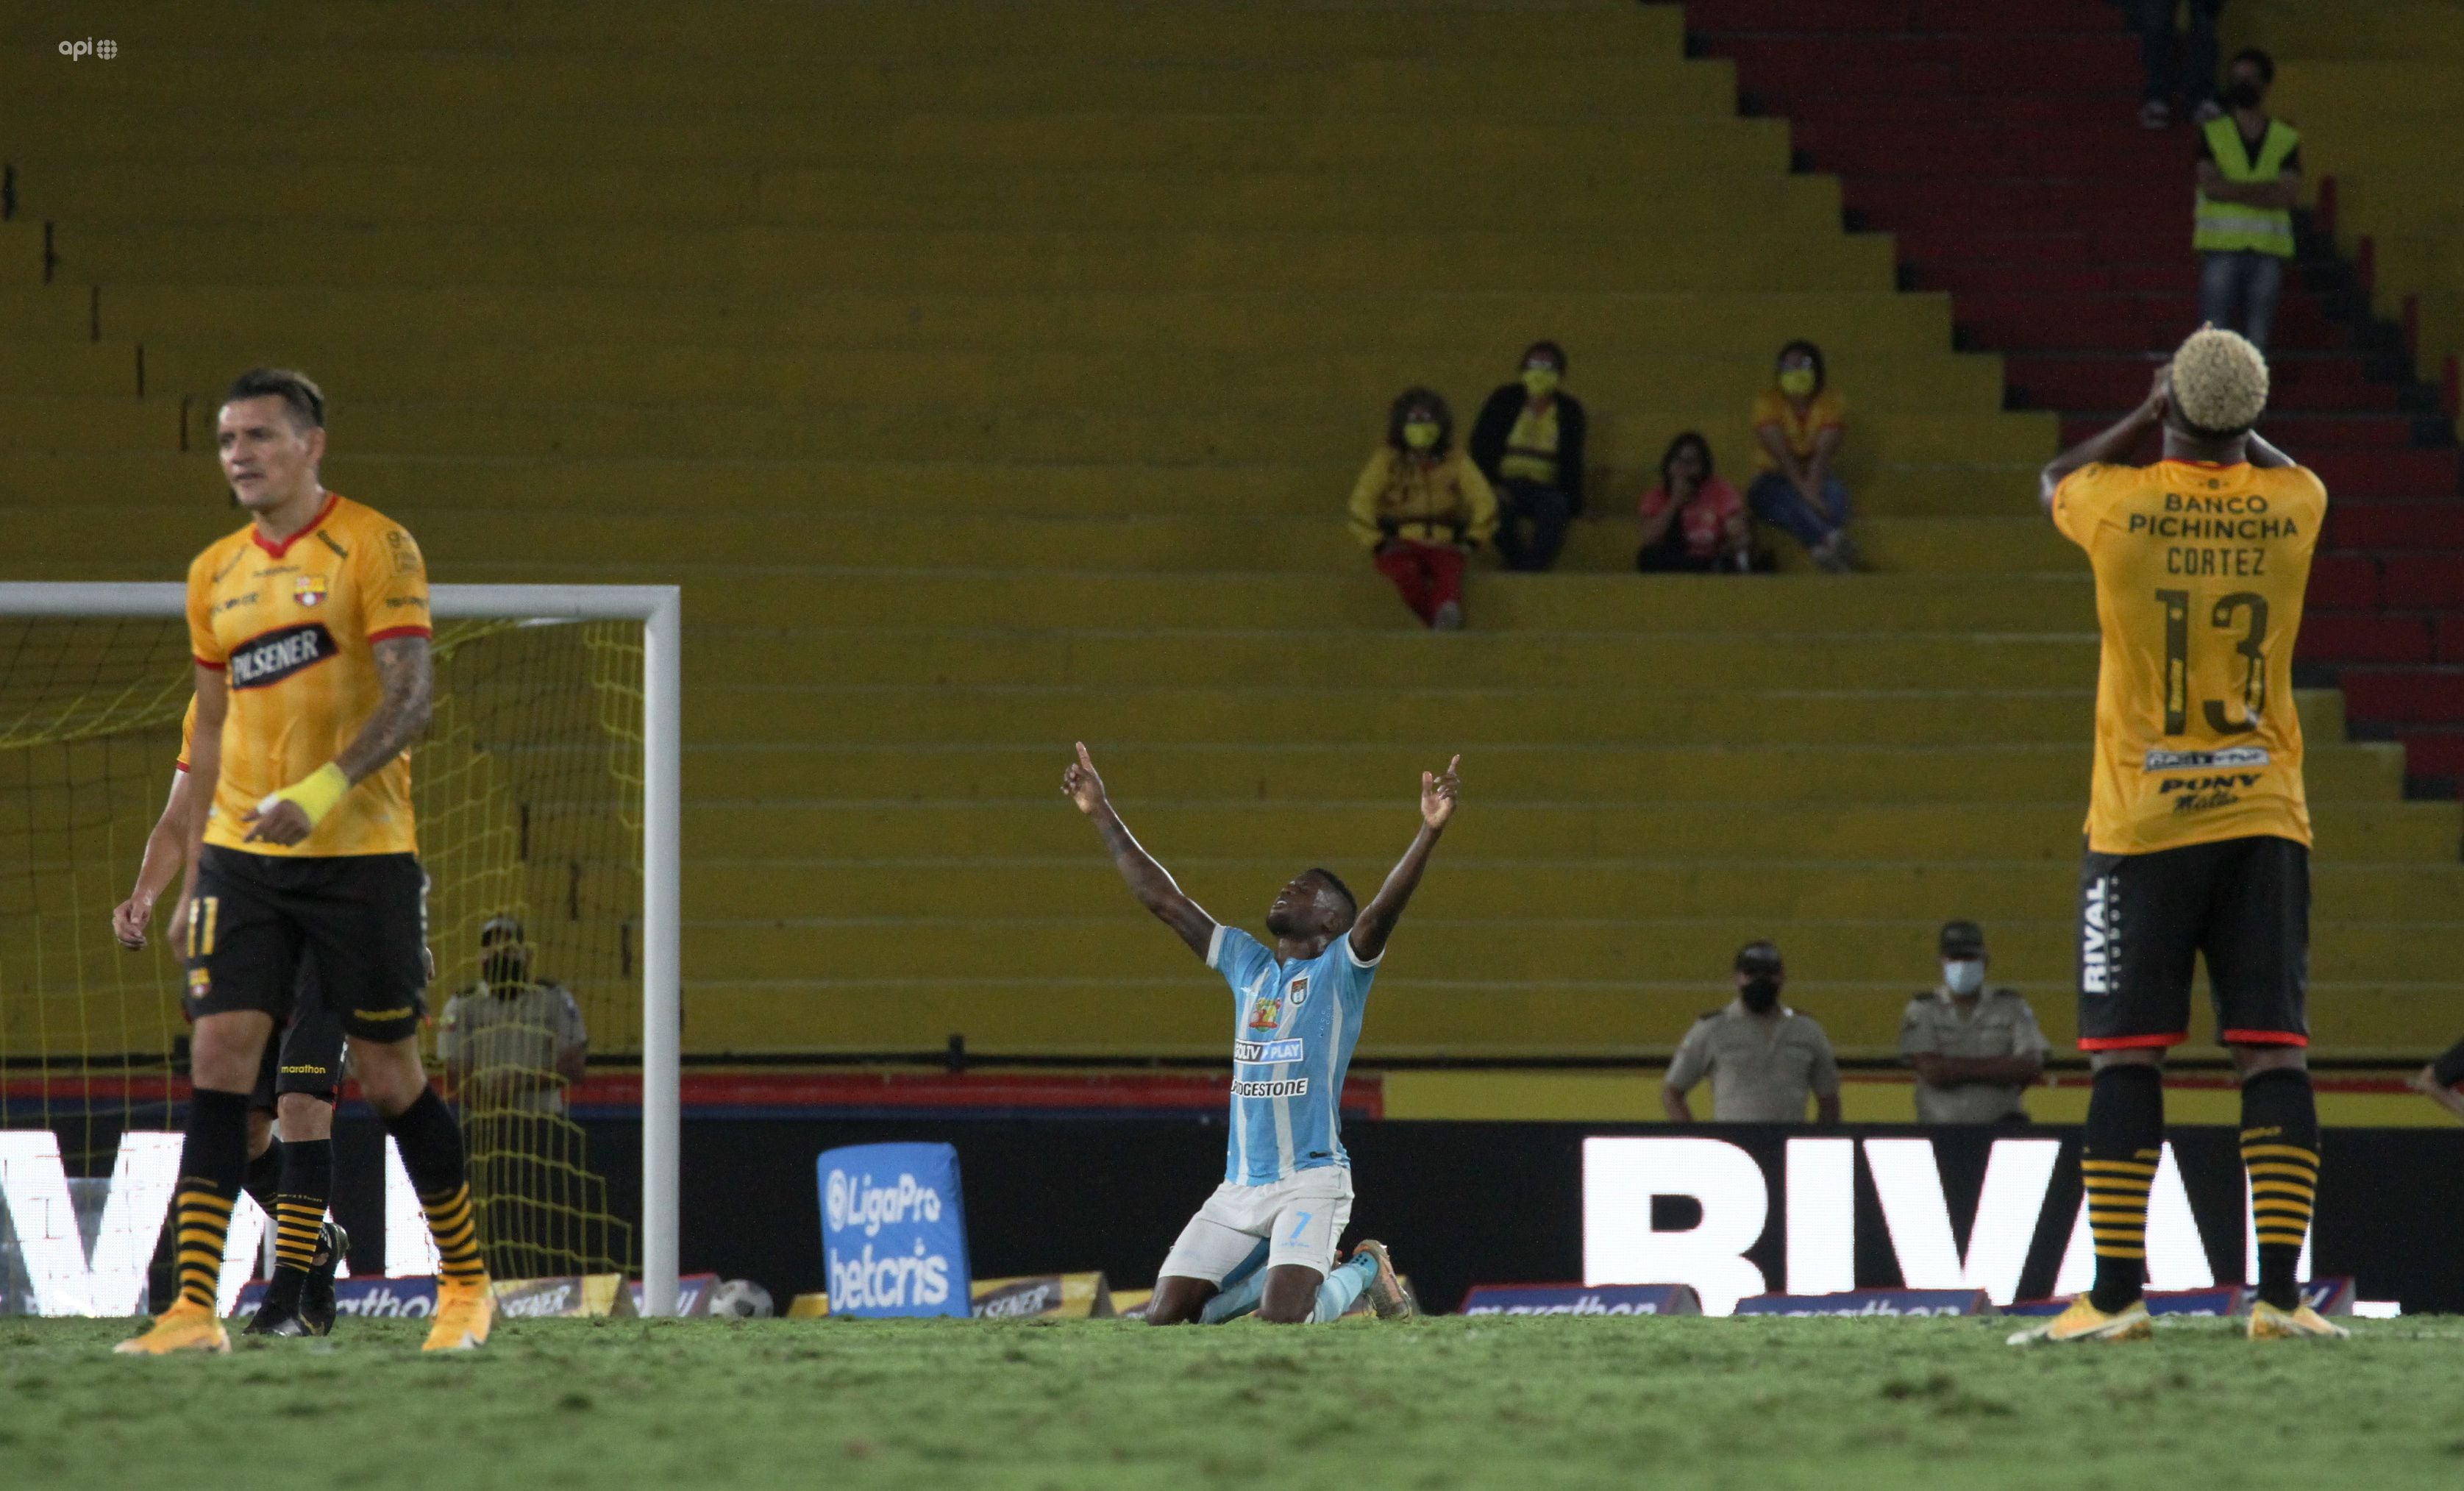 José Fajardo, el panameño cuyos goles llevaron a 9 de Octubre FC a un torneo internacional luego de 37 años, se despide del club de Guayaquil